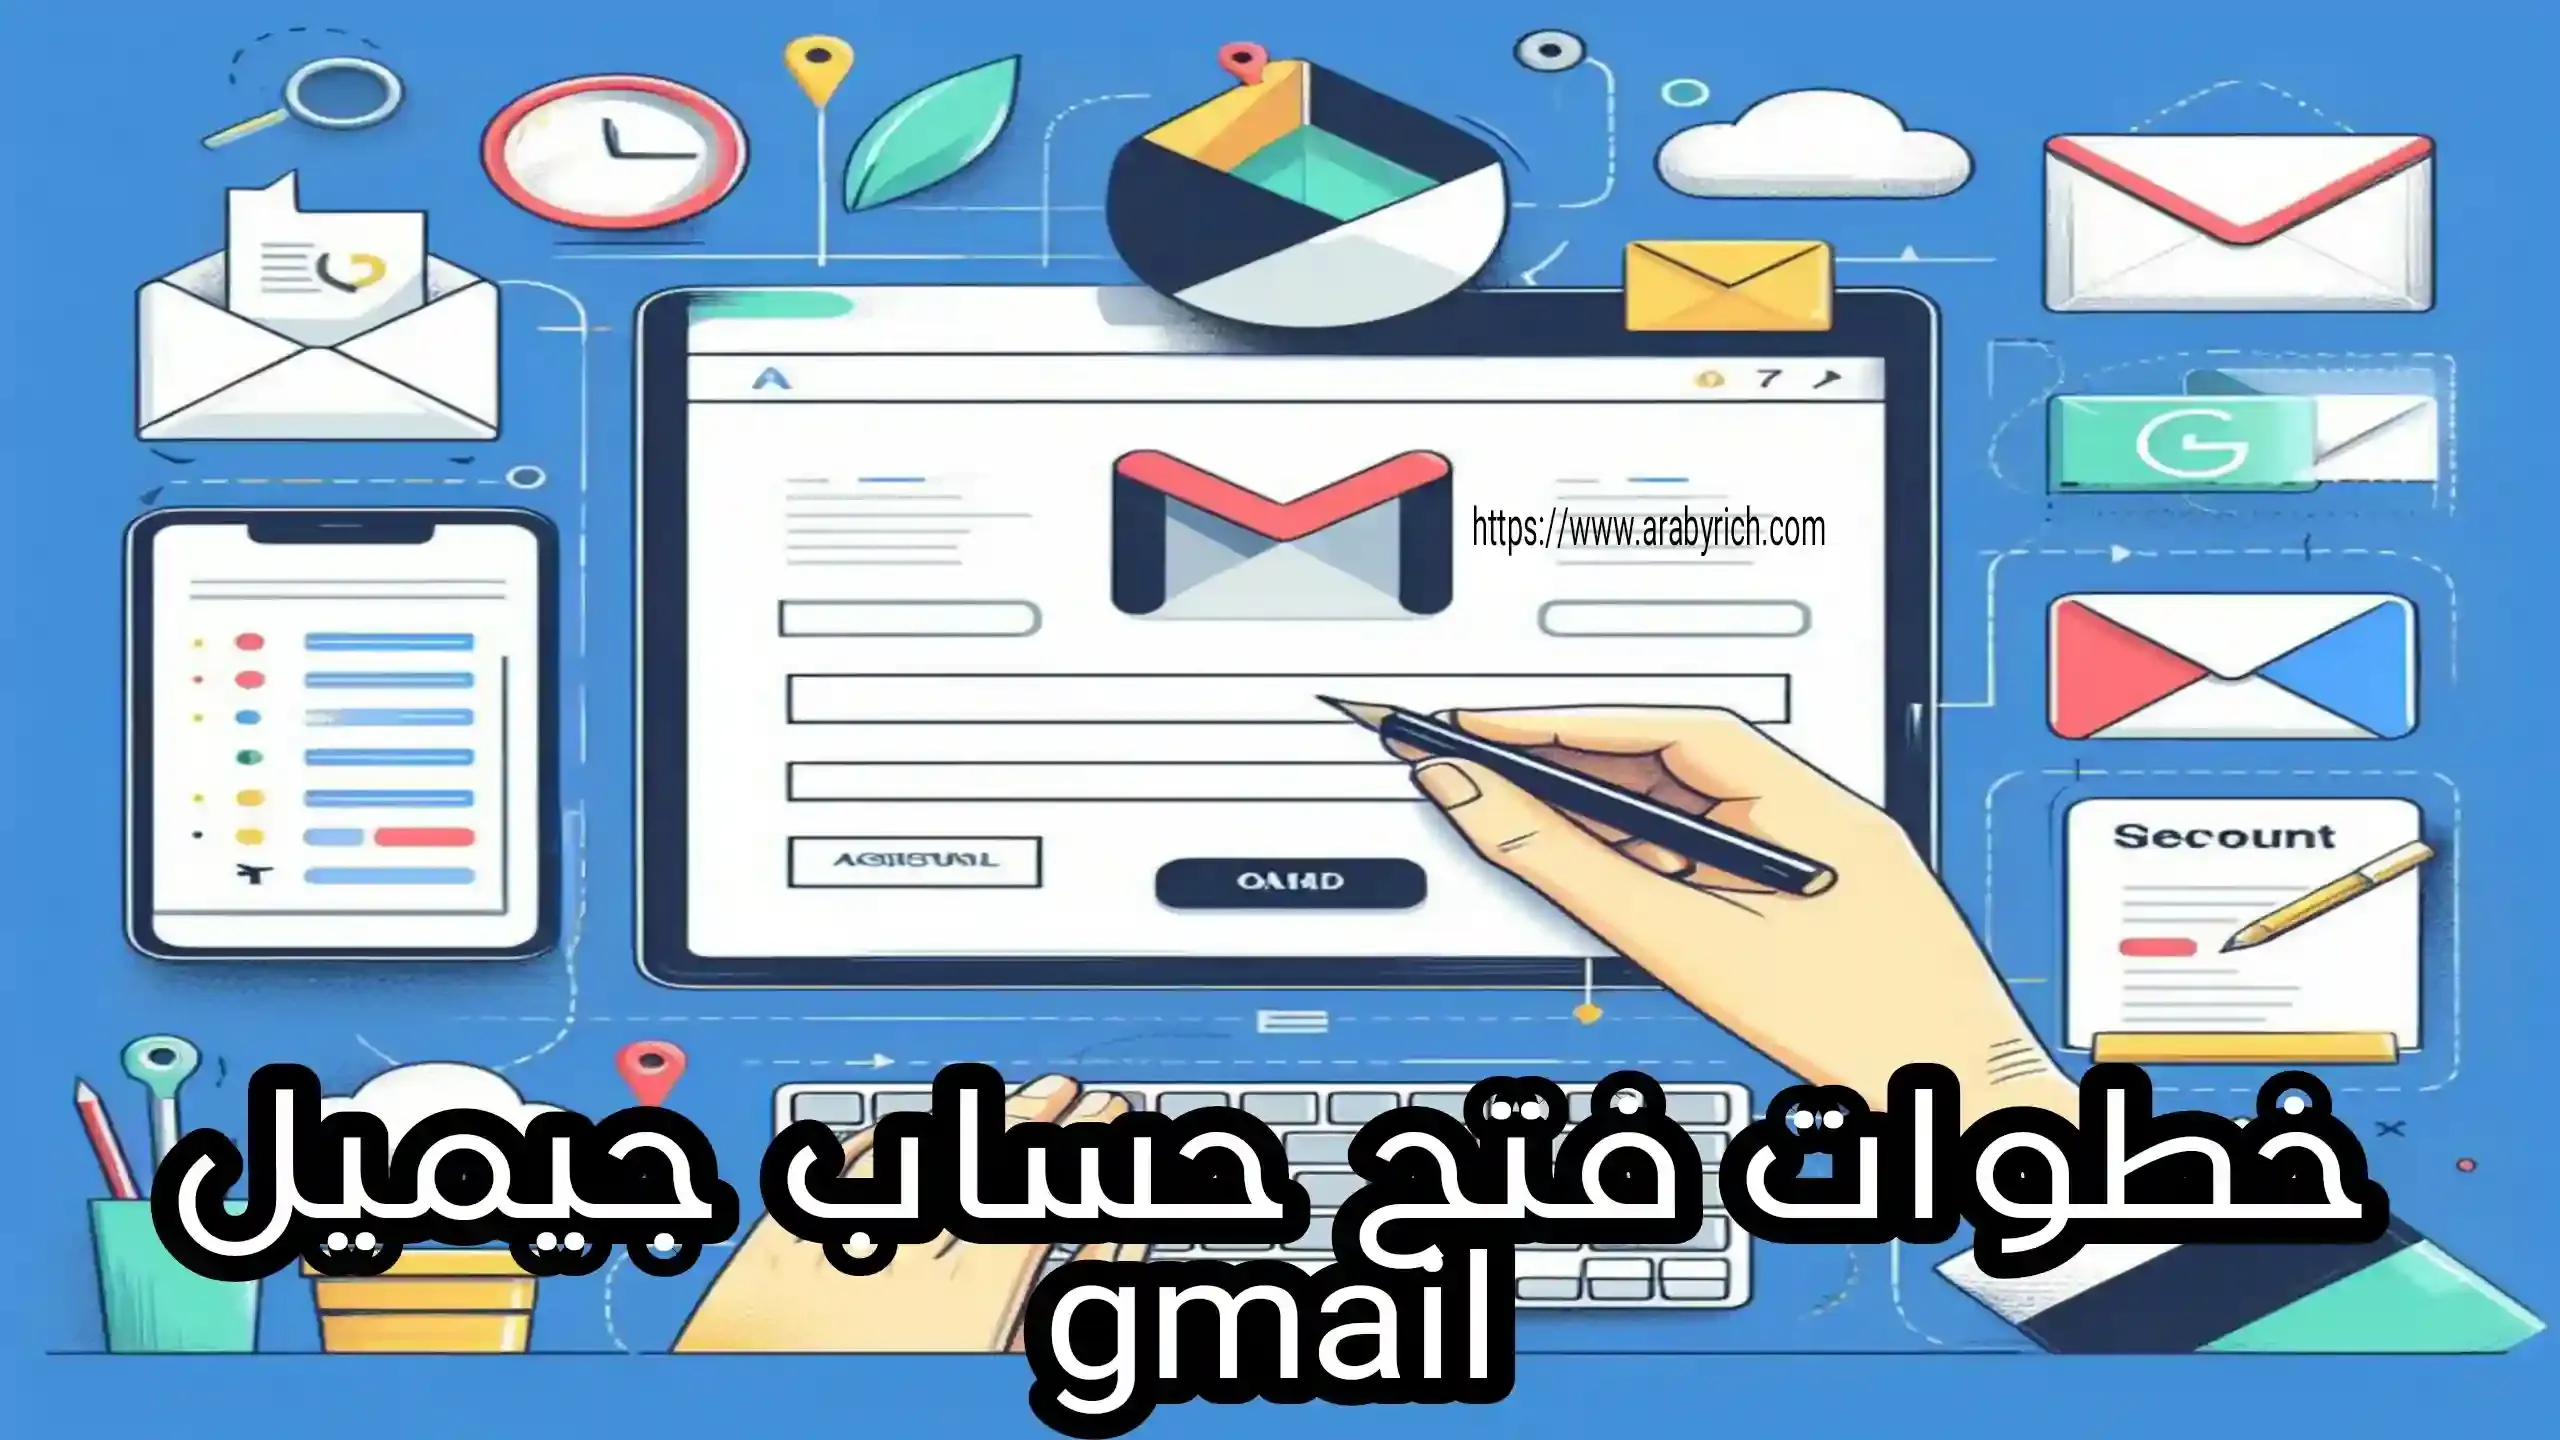 فتح حساب جيميل gmail بسهولة